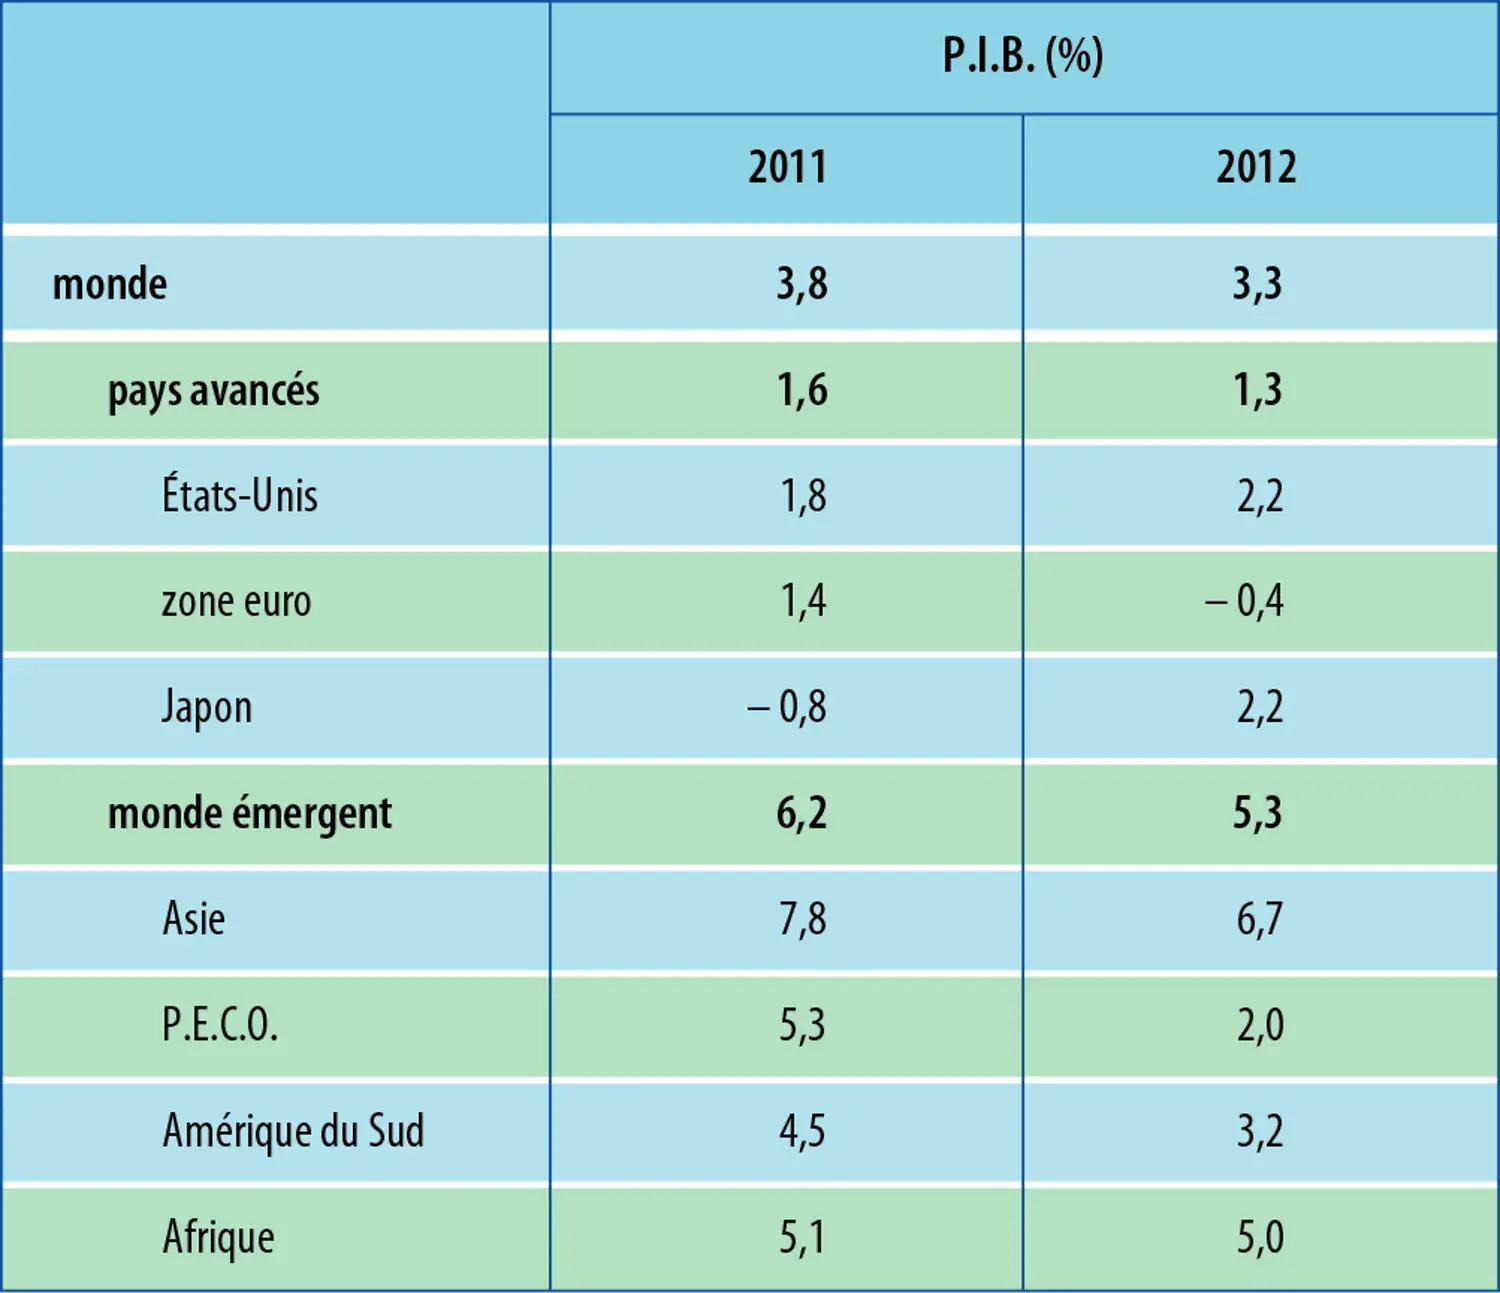 Économie mondiale (2012) : croissance annuelle du P.I.B.